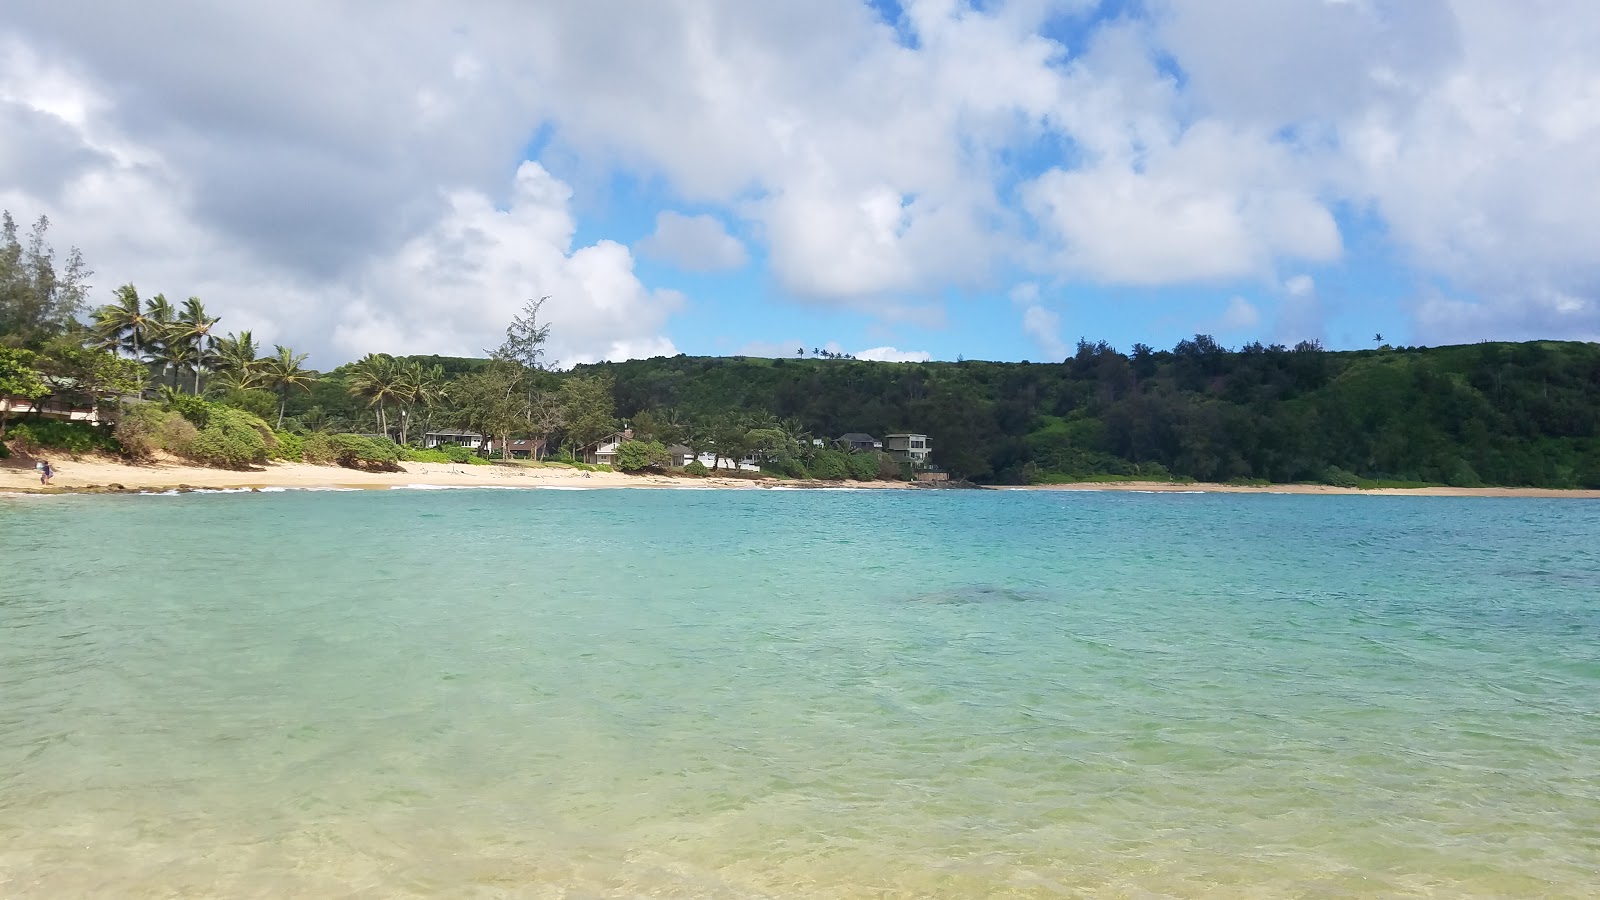 Foto af Moloa'a Beach - populært sted blandt afslapningskendere